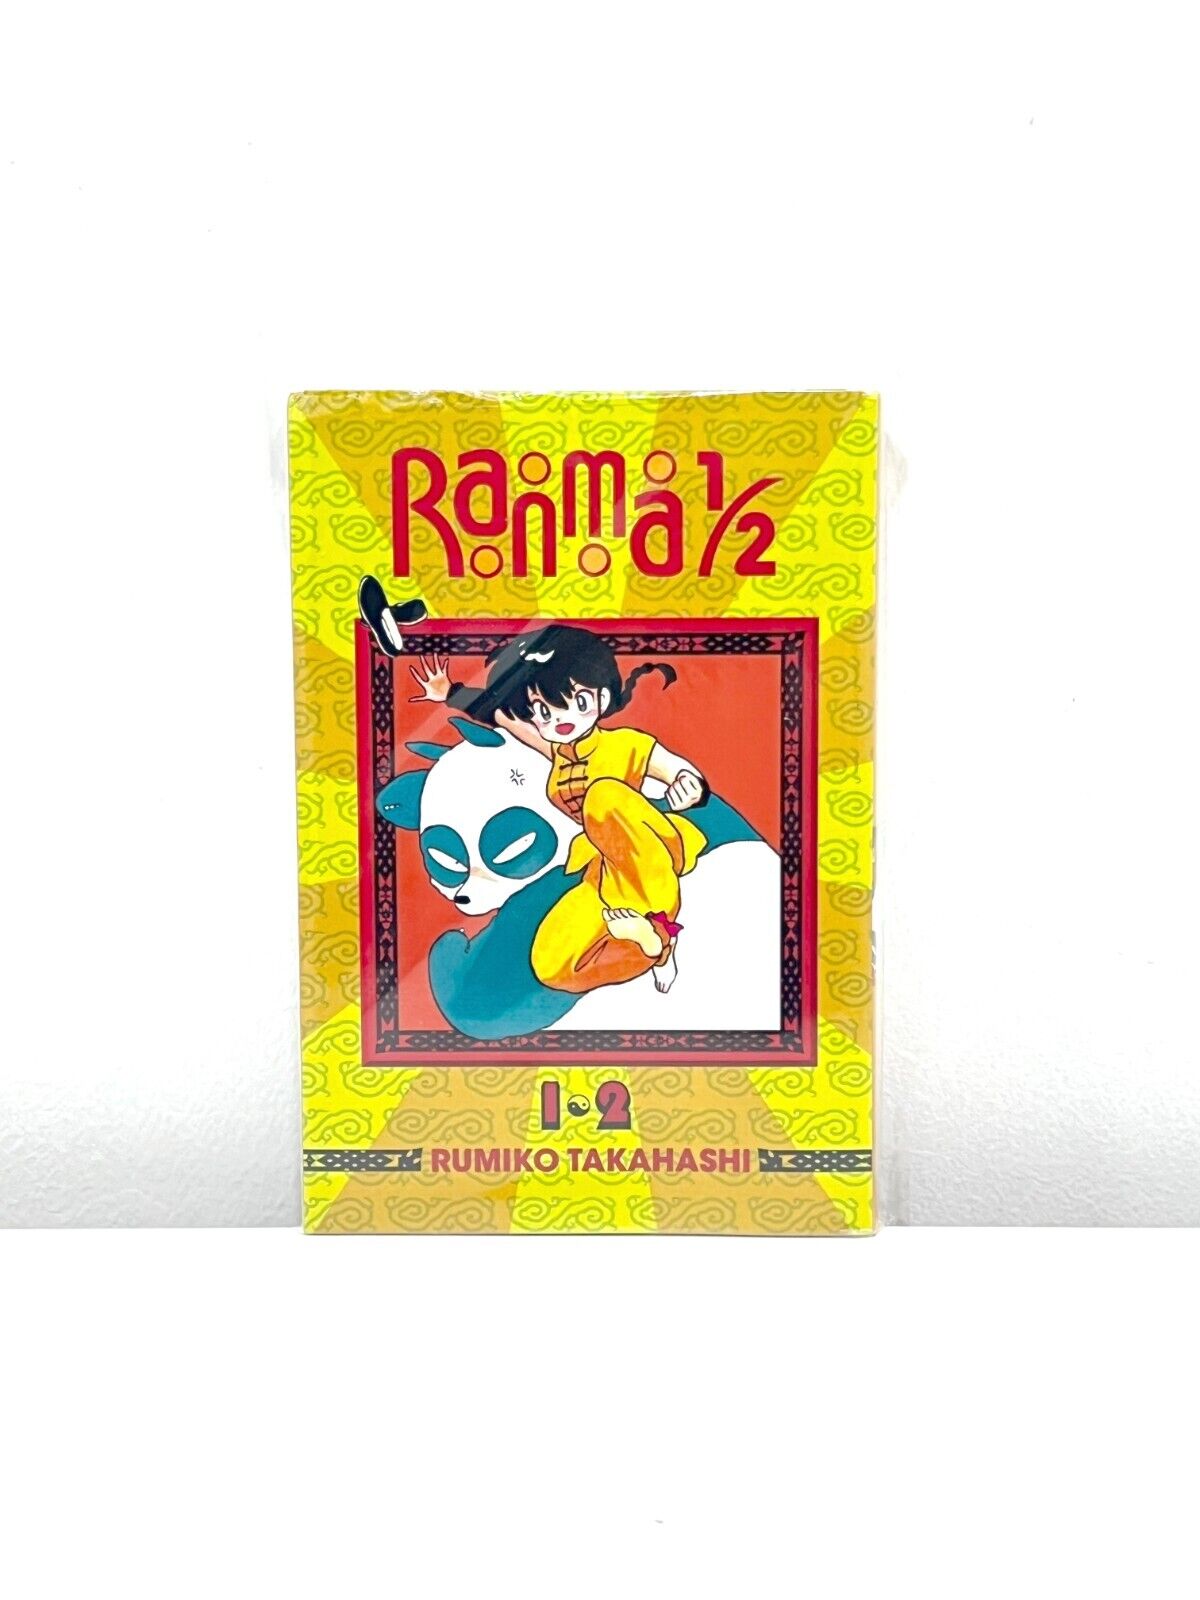 Ranma 1/2 Manga by Rumiko Takahashi Vol 1-38 English Version Loose 